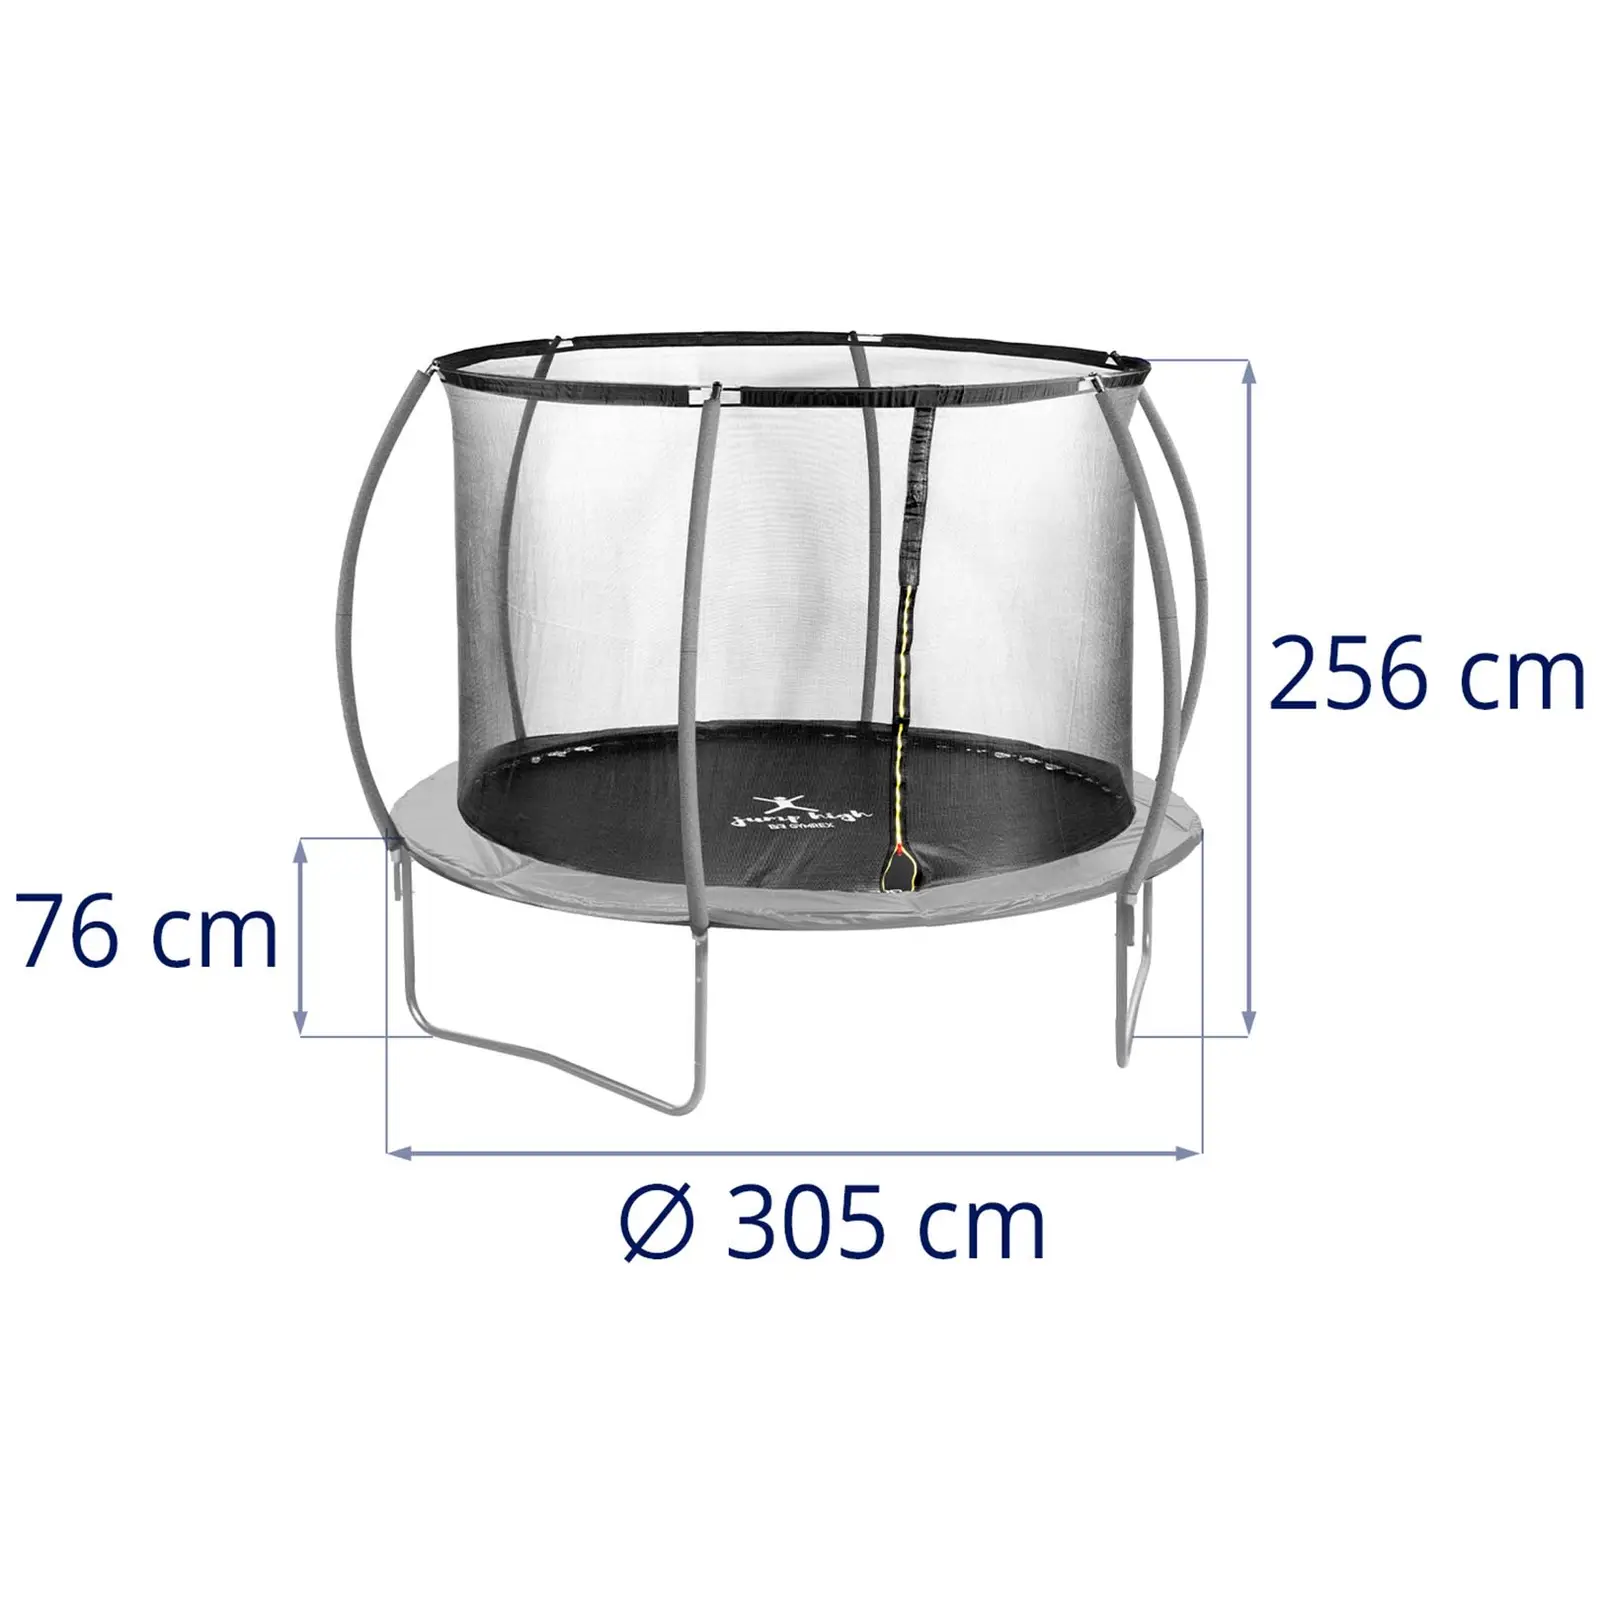 Brugt Trampolin med net - 305 cm i diameter - 100 kg - sort/grå